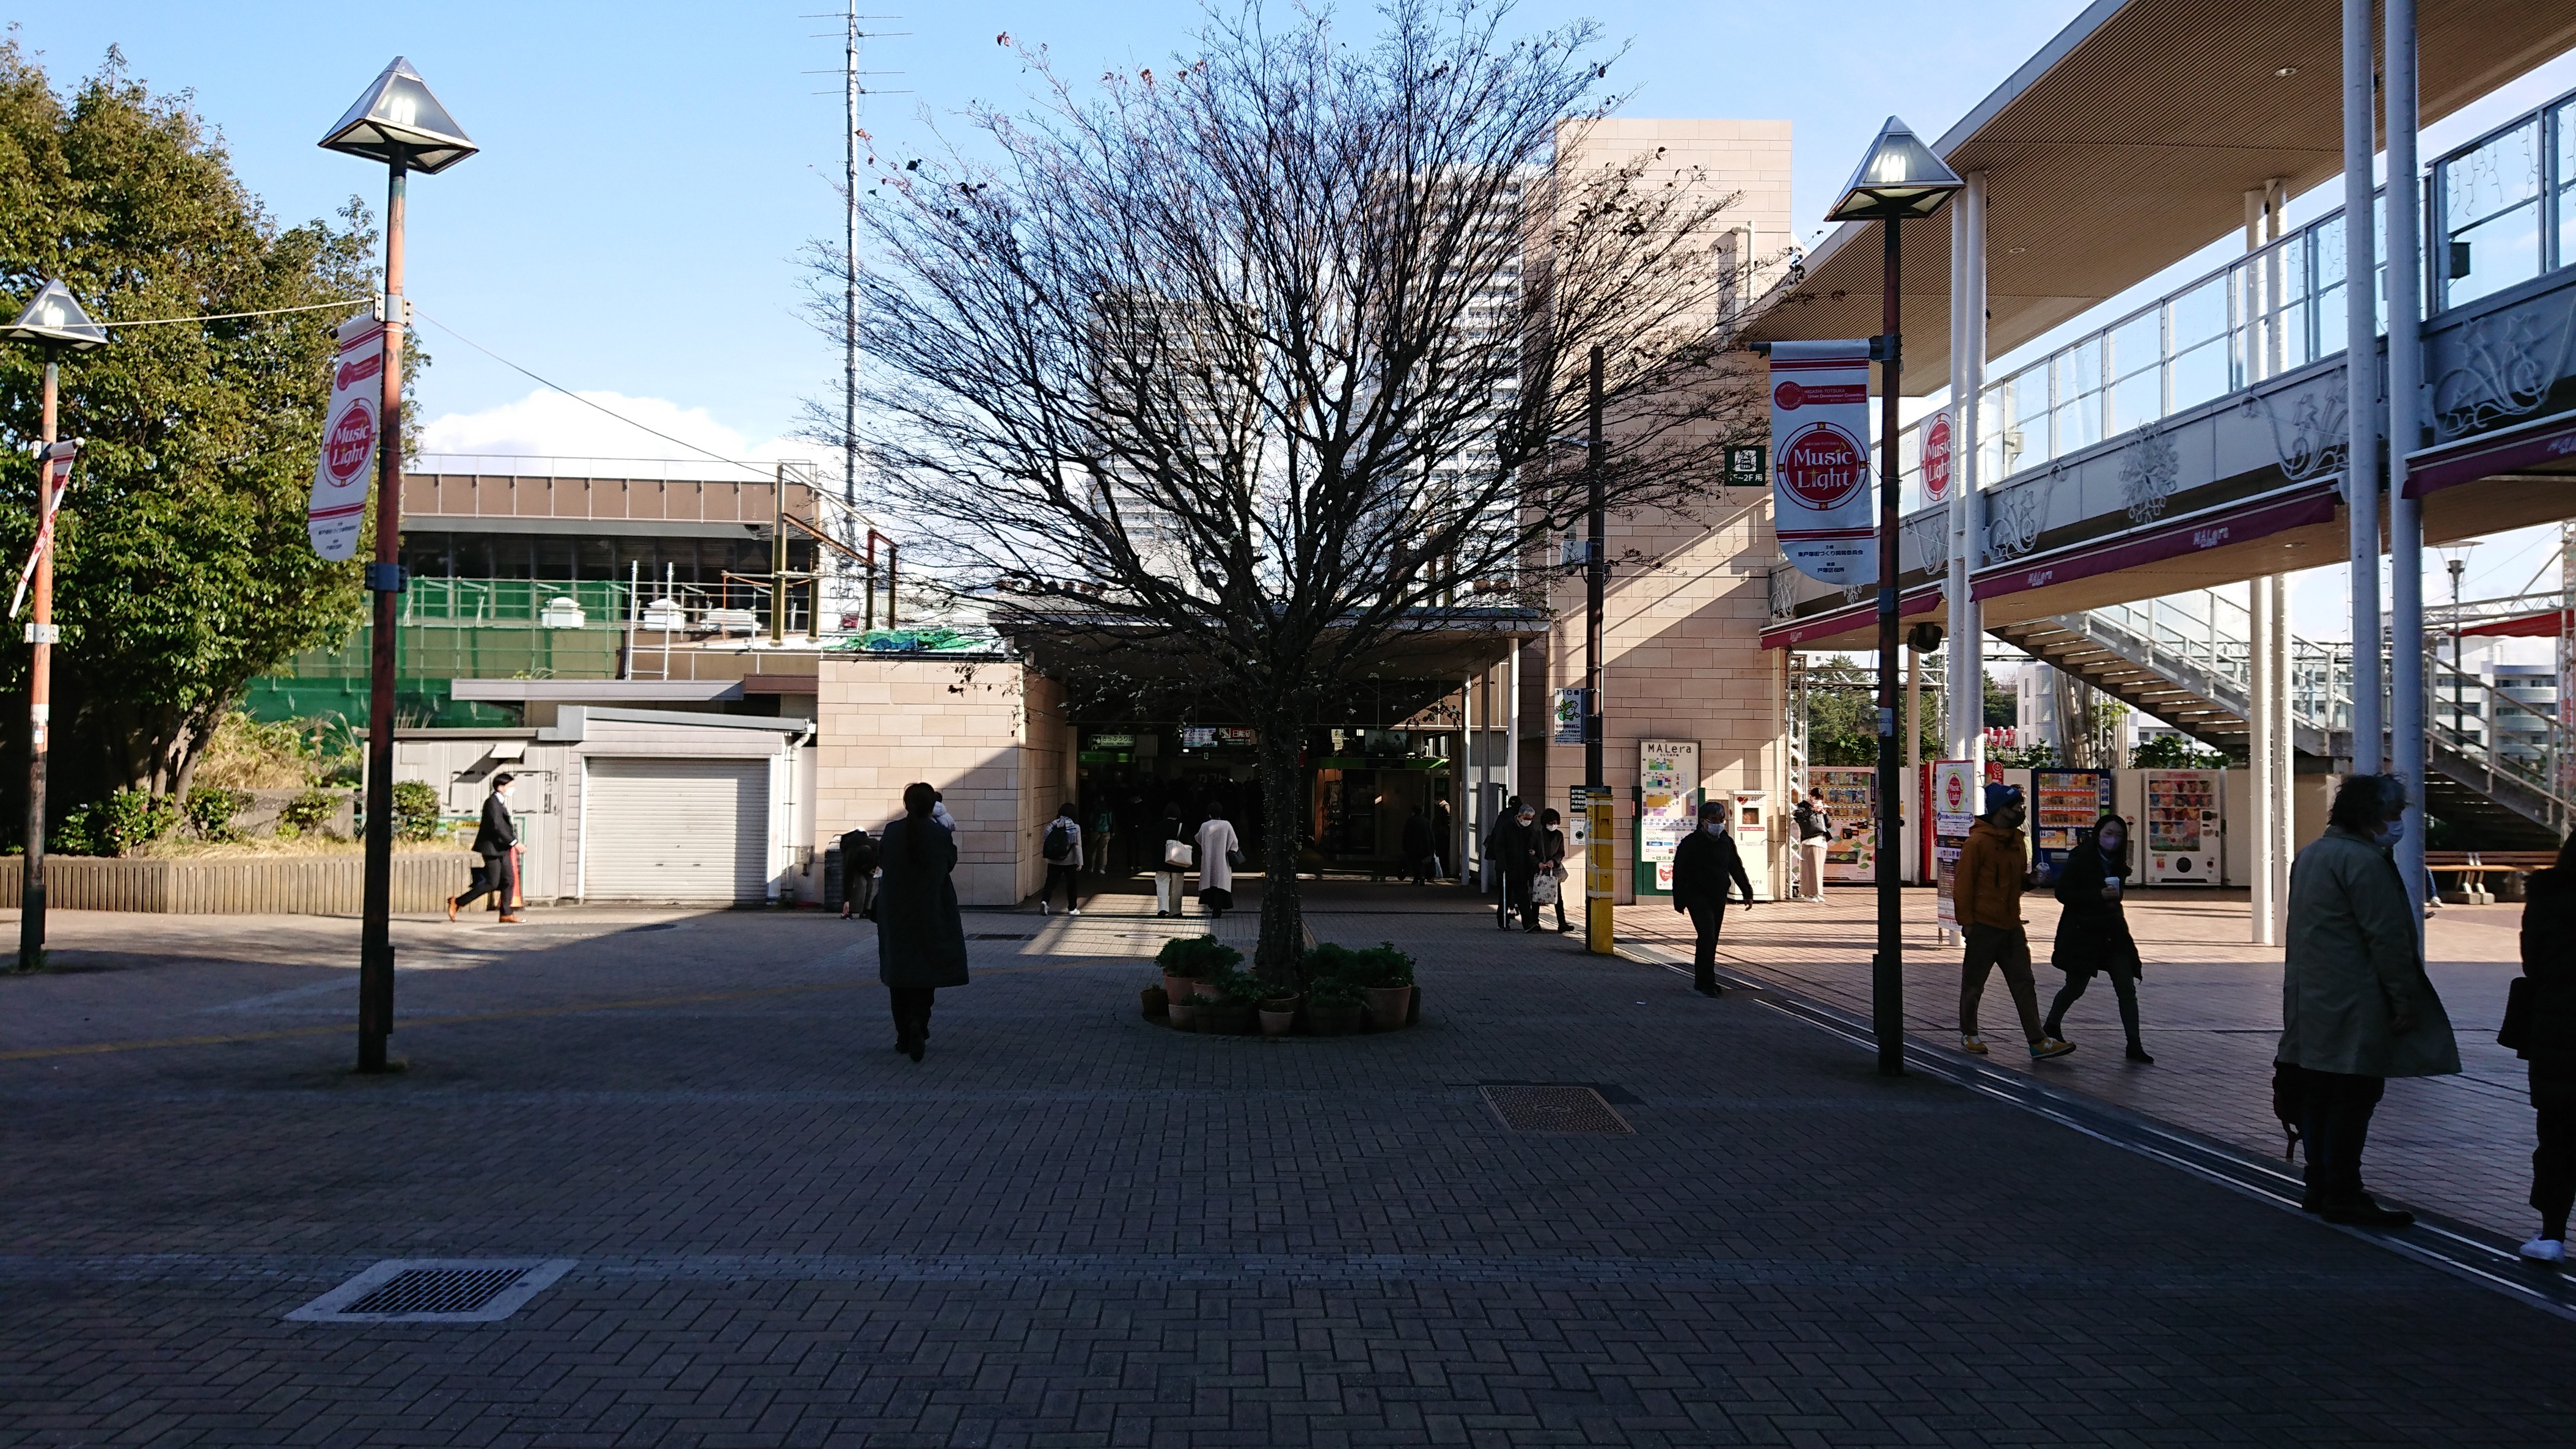 東戸塚駅